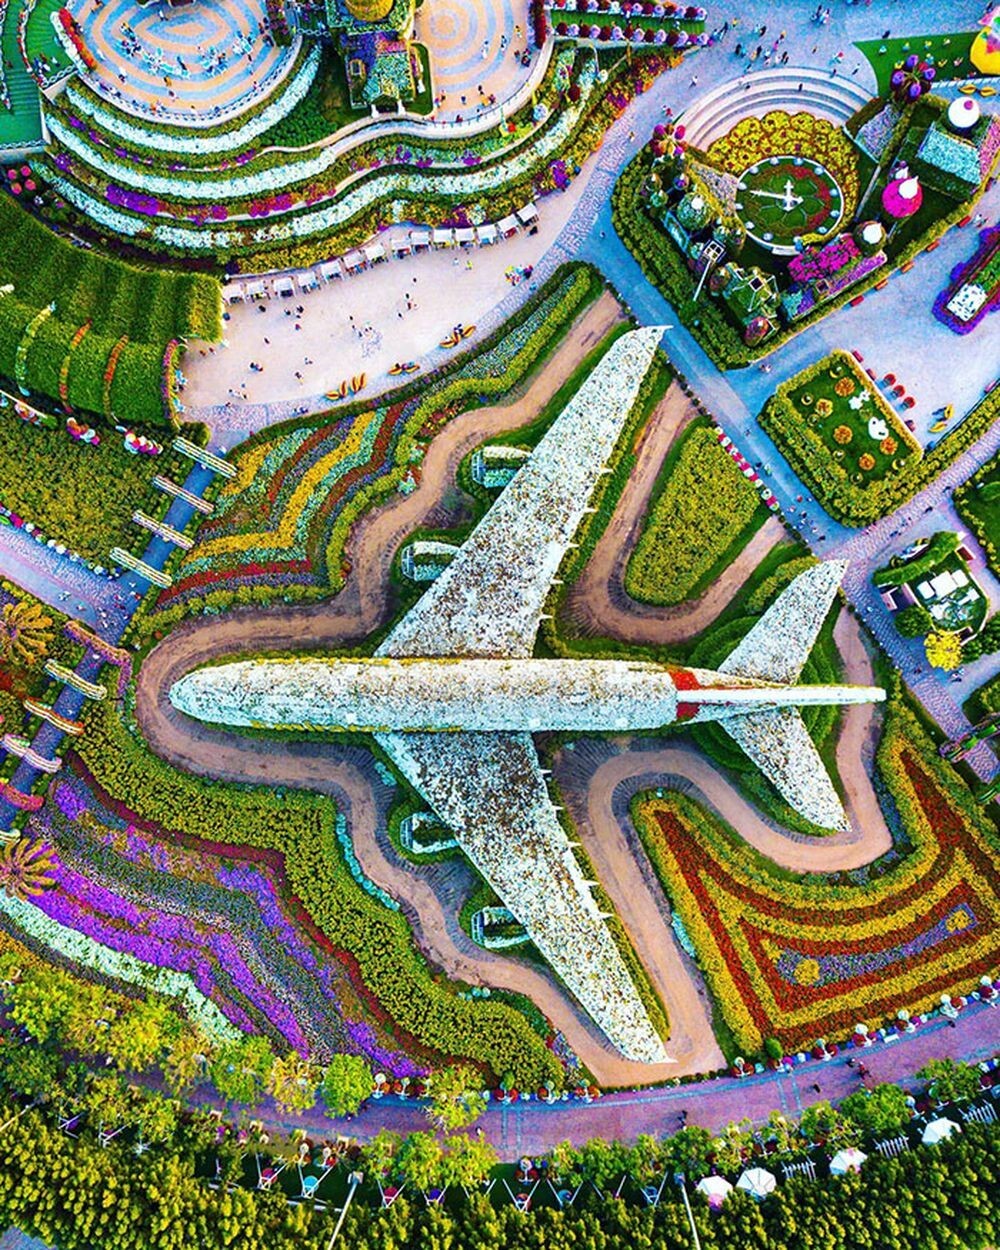 12. «Miracle Garden просто не был бы полным без установки настоящего A380, покрытого 5-метровыми цветами. Добро пожаловать в крупнейший в мире ботанический сад в Дубае»